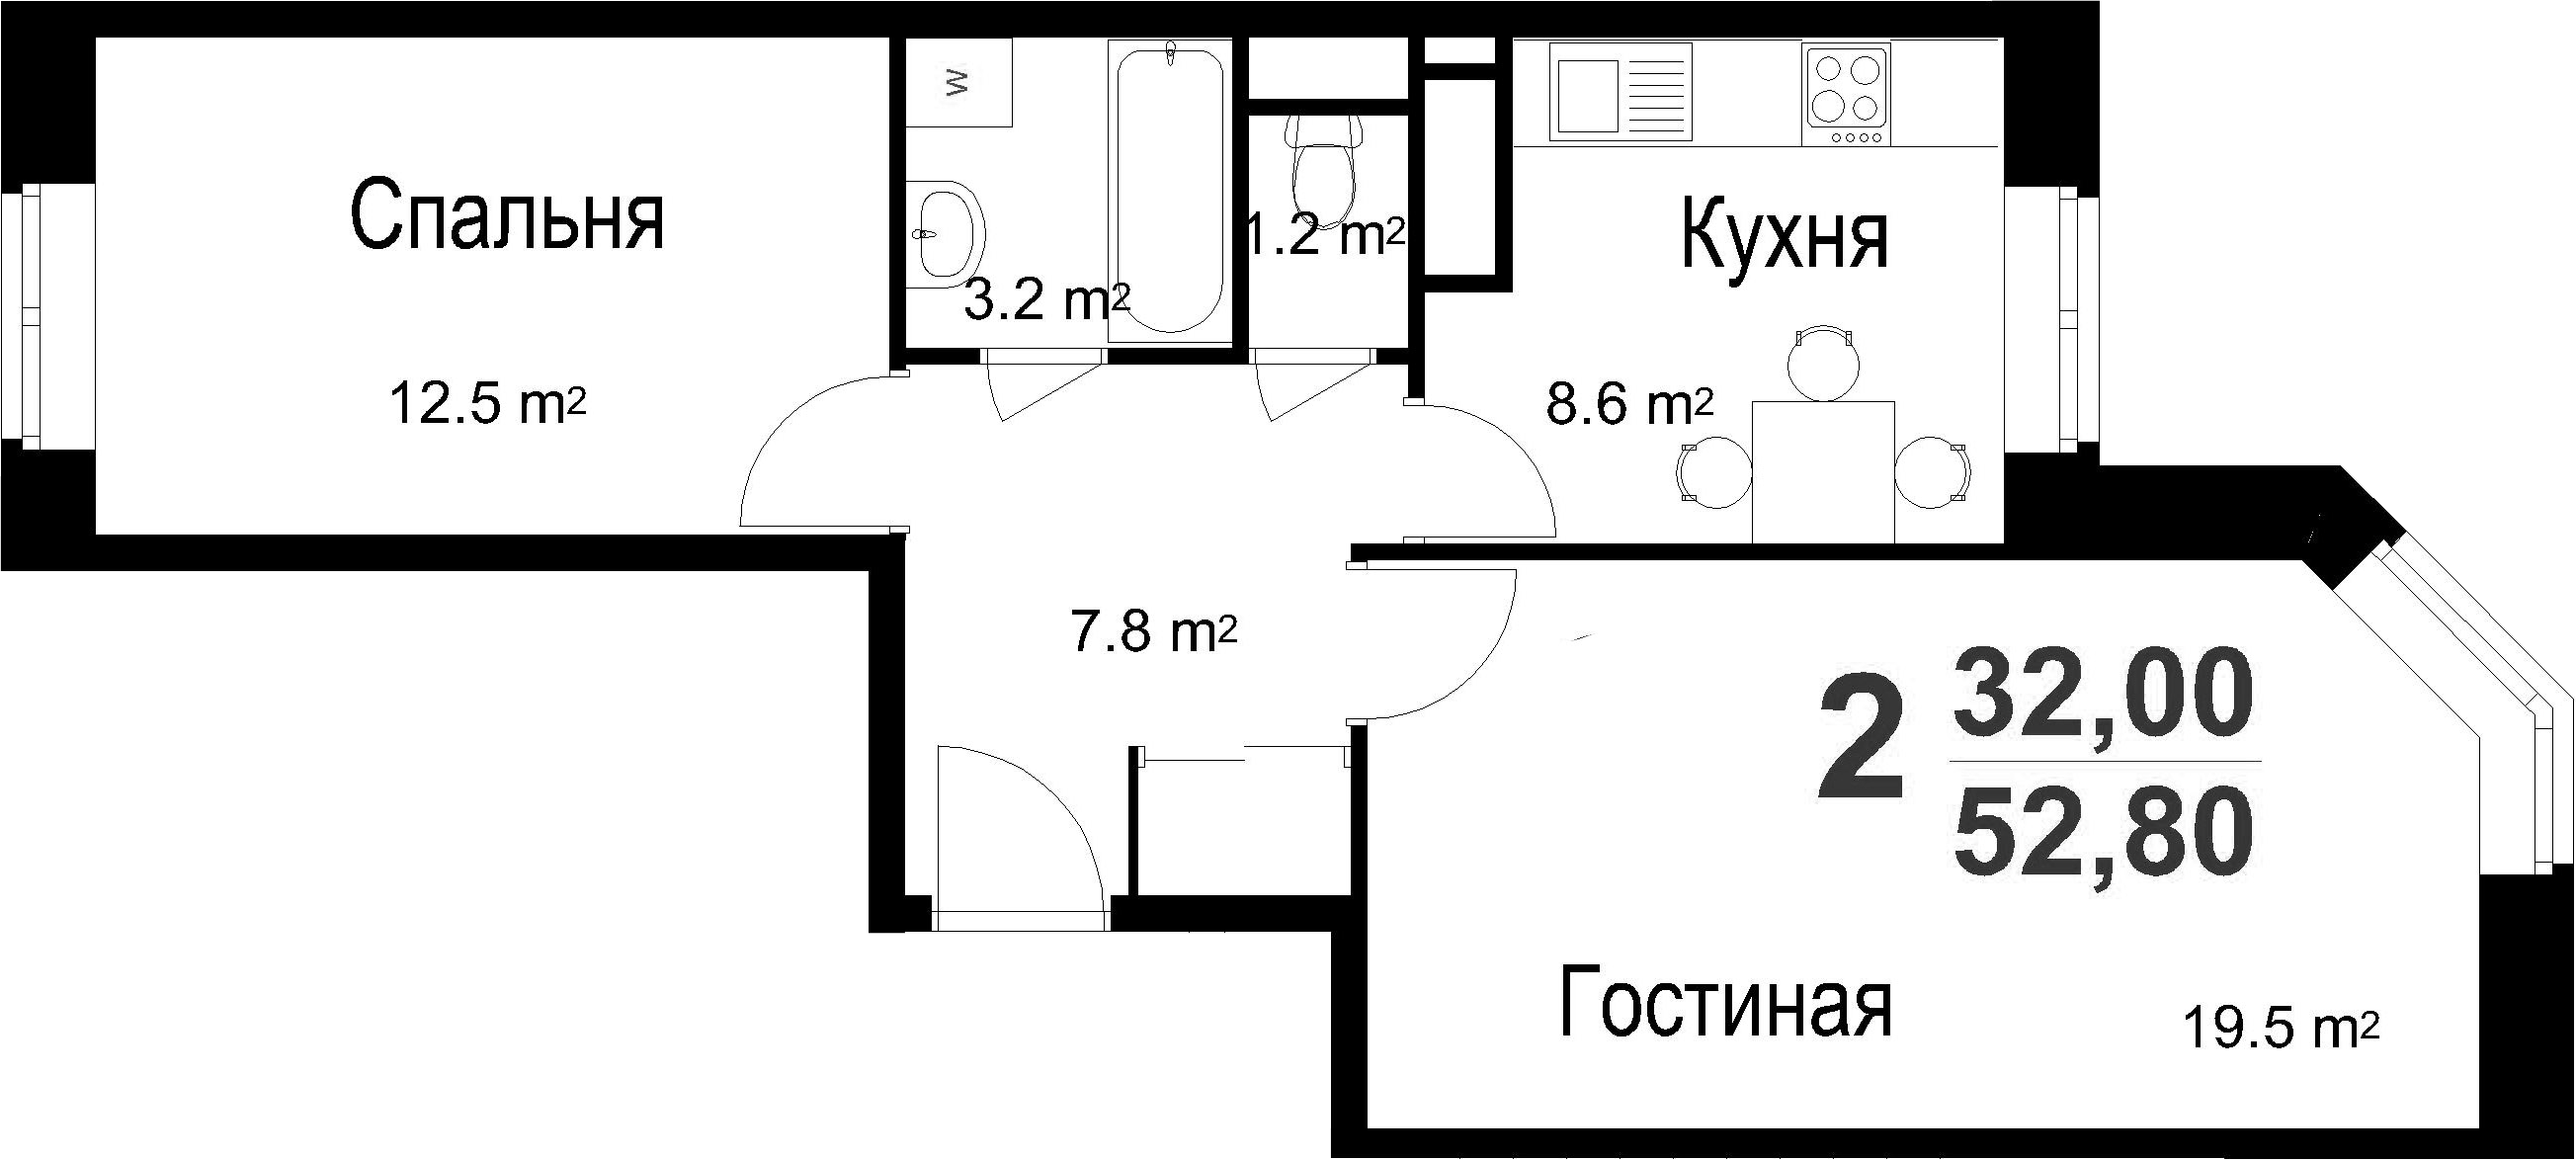 2-к.кв, 52.8 м²